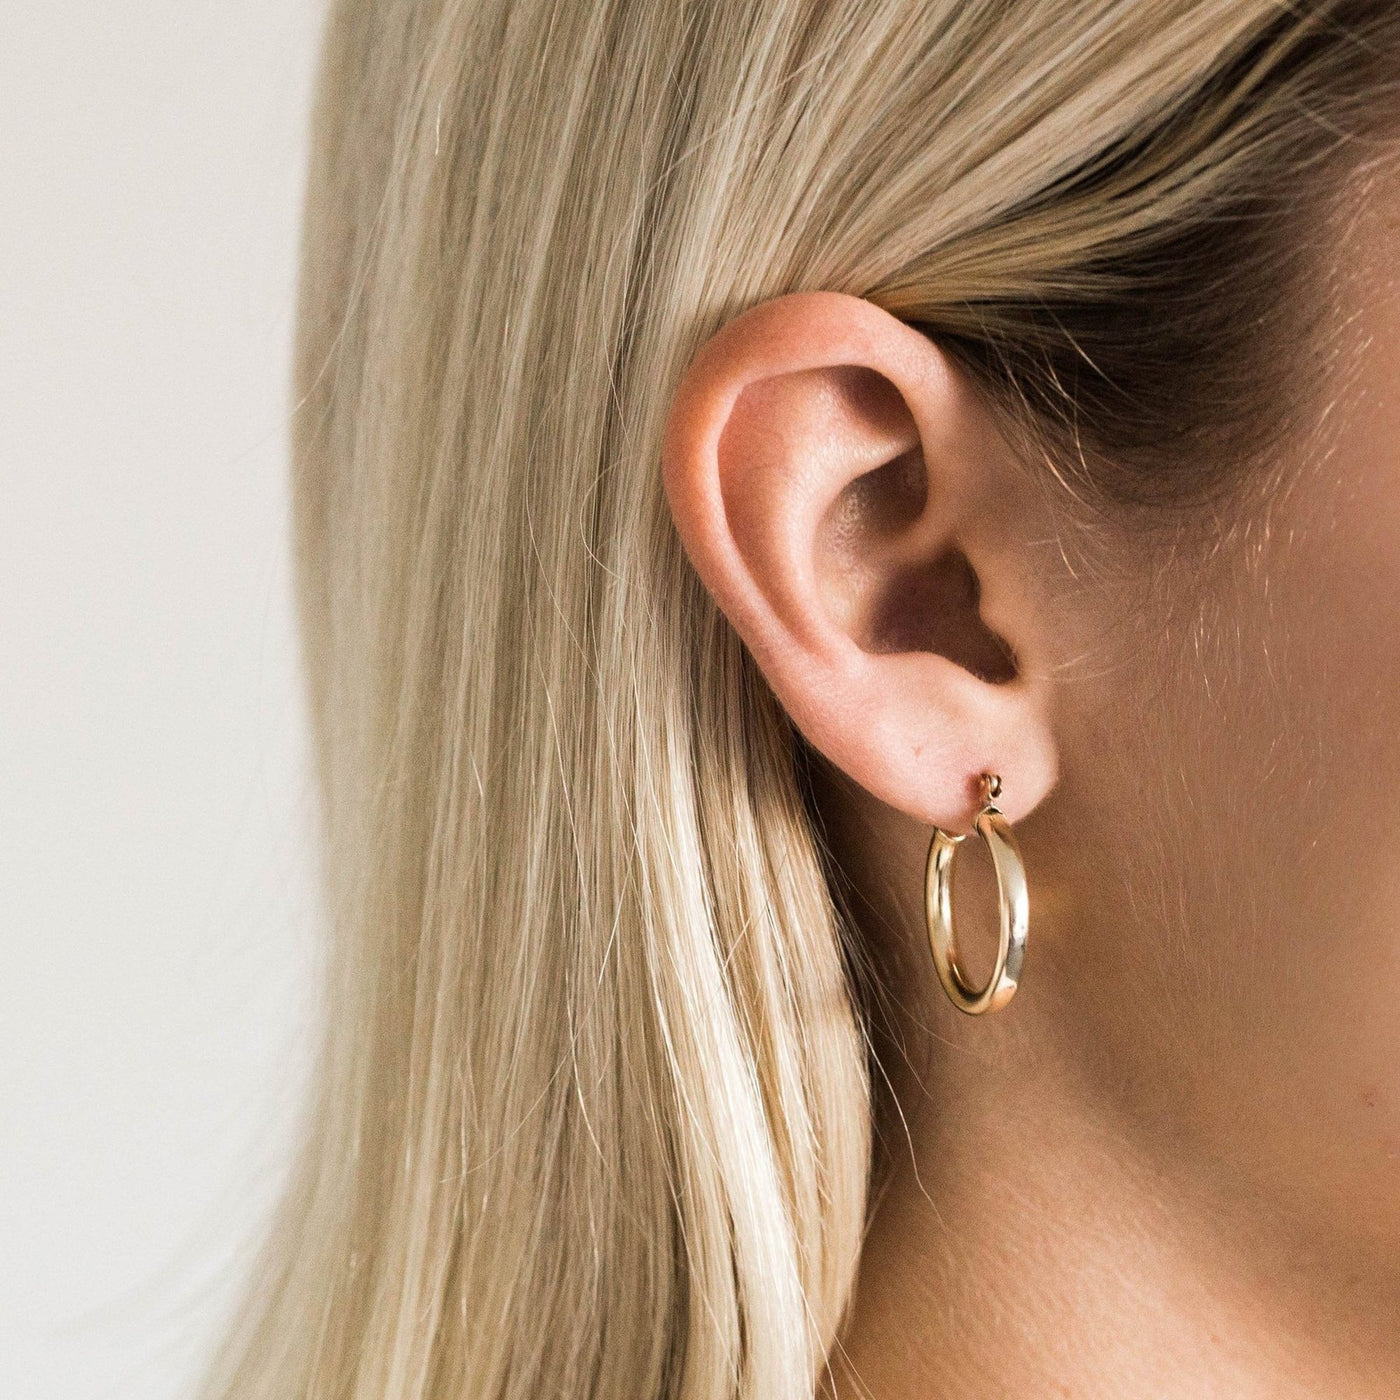 Gold Chunky Hoop Earrings | Simple & Dainty